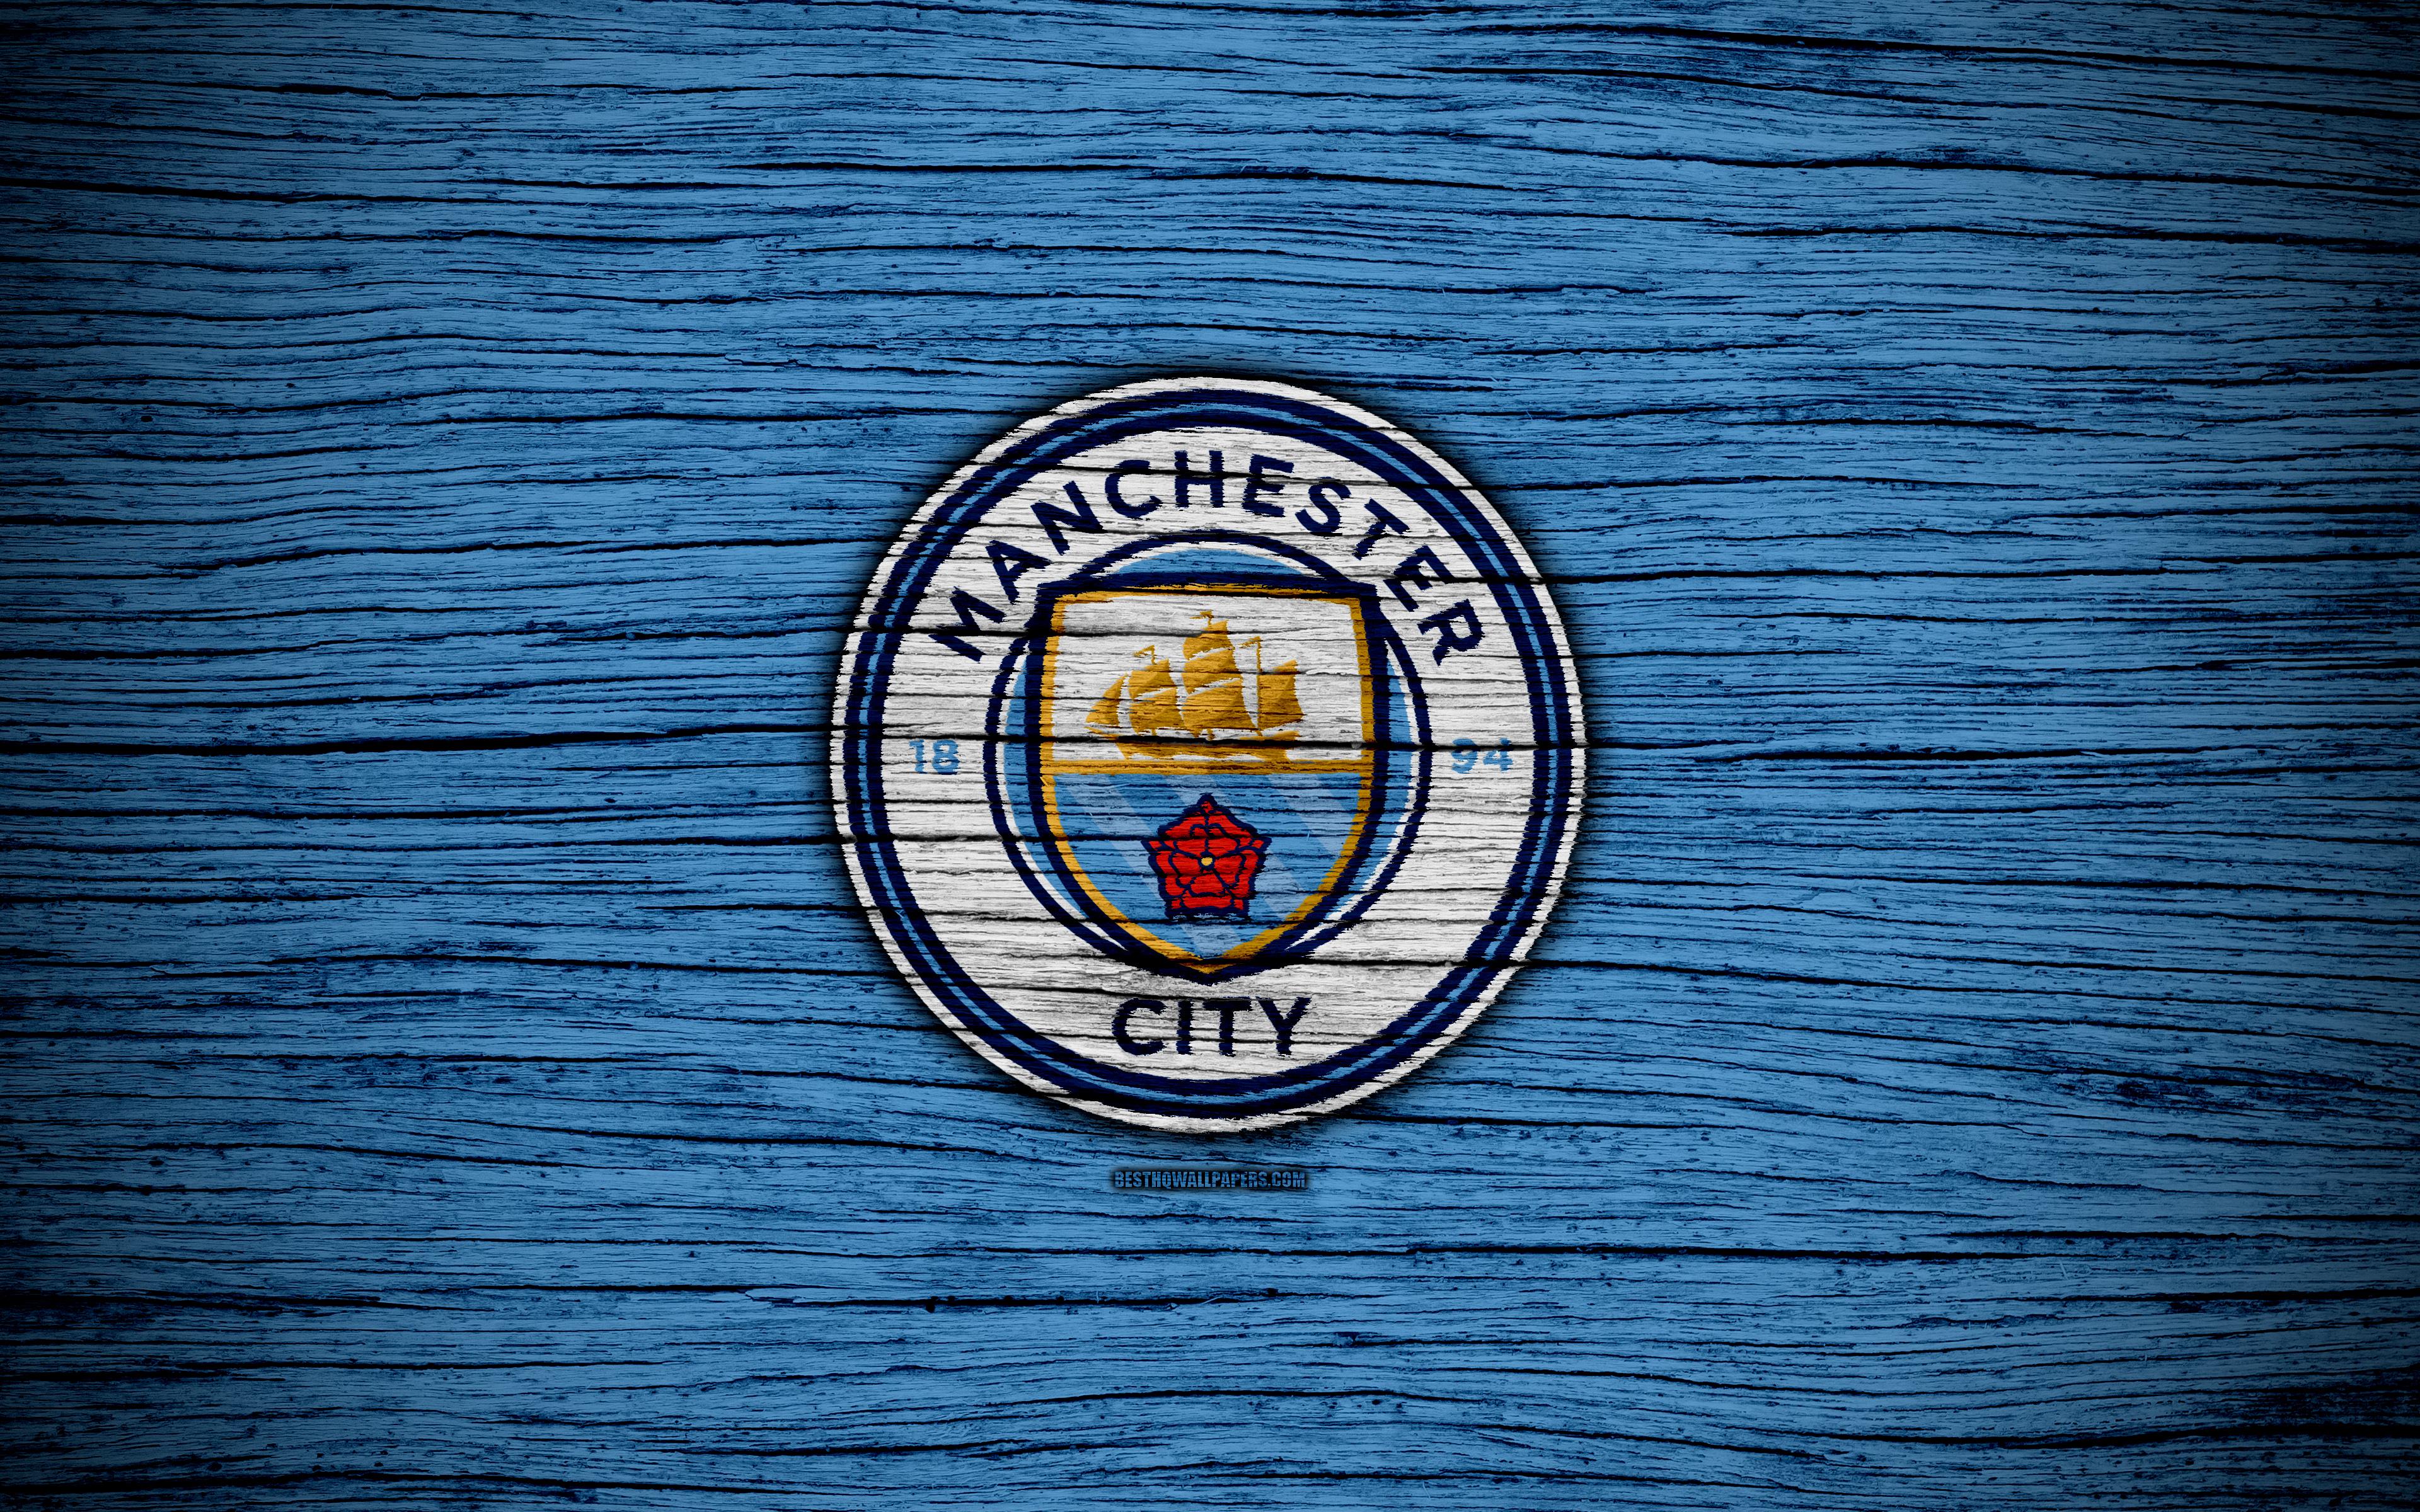 Manchester City Desktop Hd Wallpapers - Wallpaper Cave